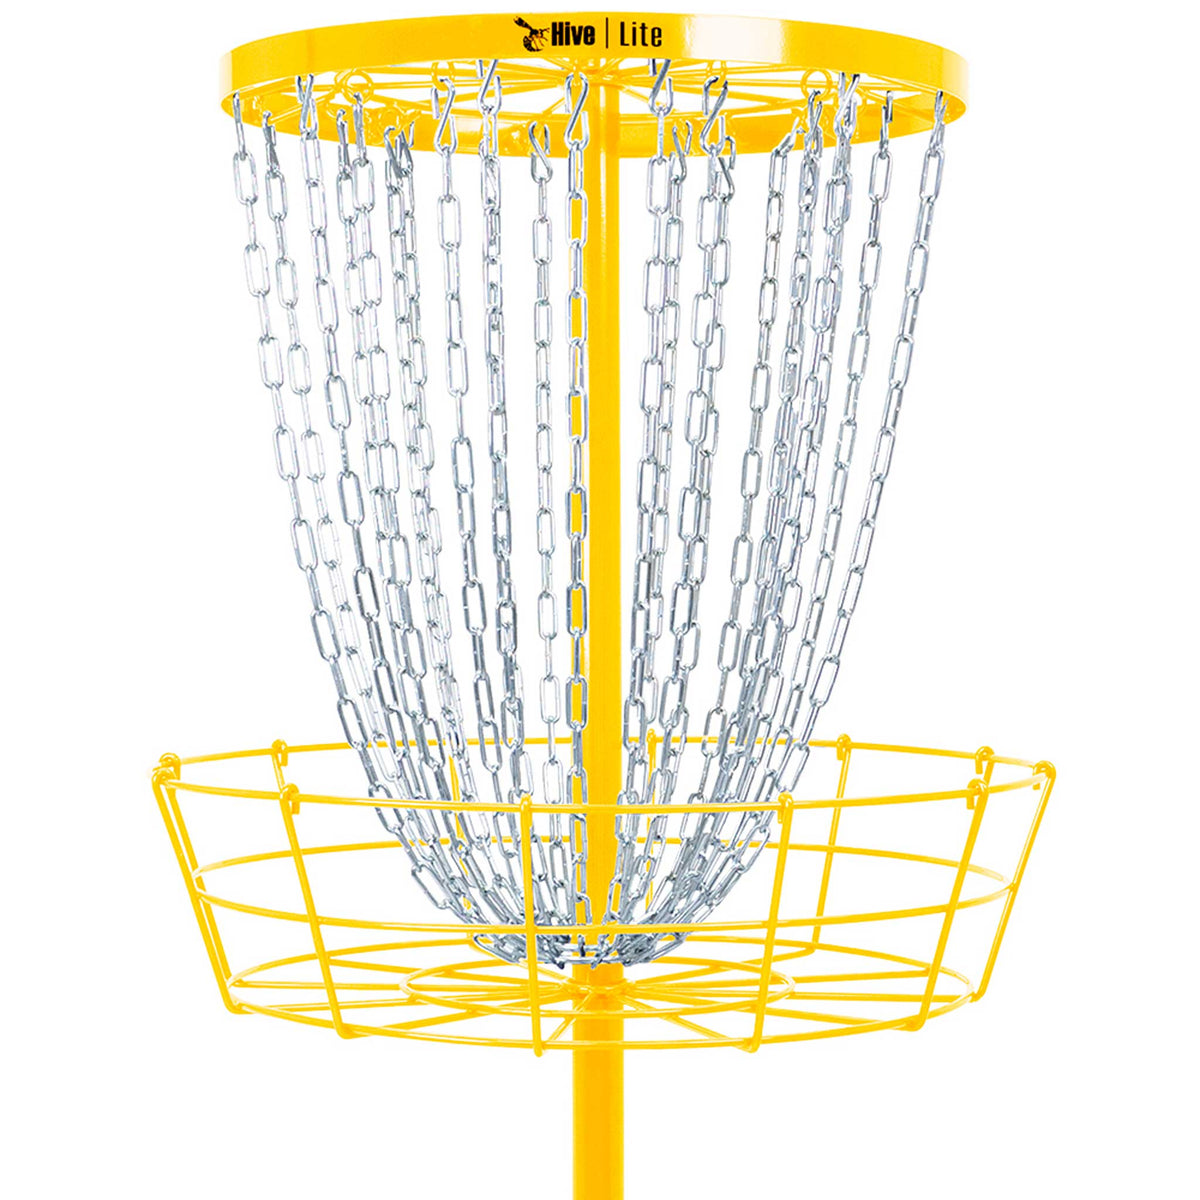 Hive Lite Disc Golf Basket - Yellow